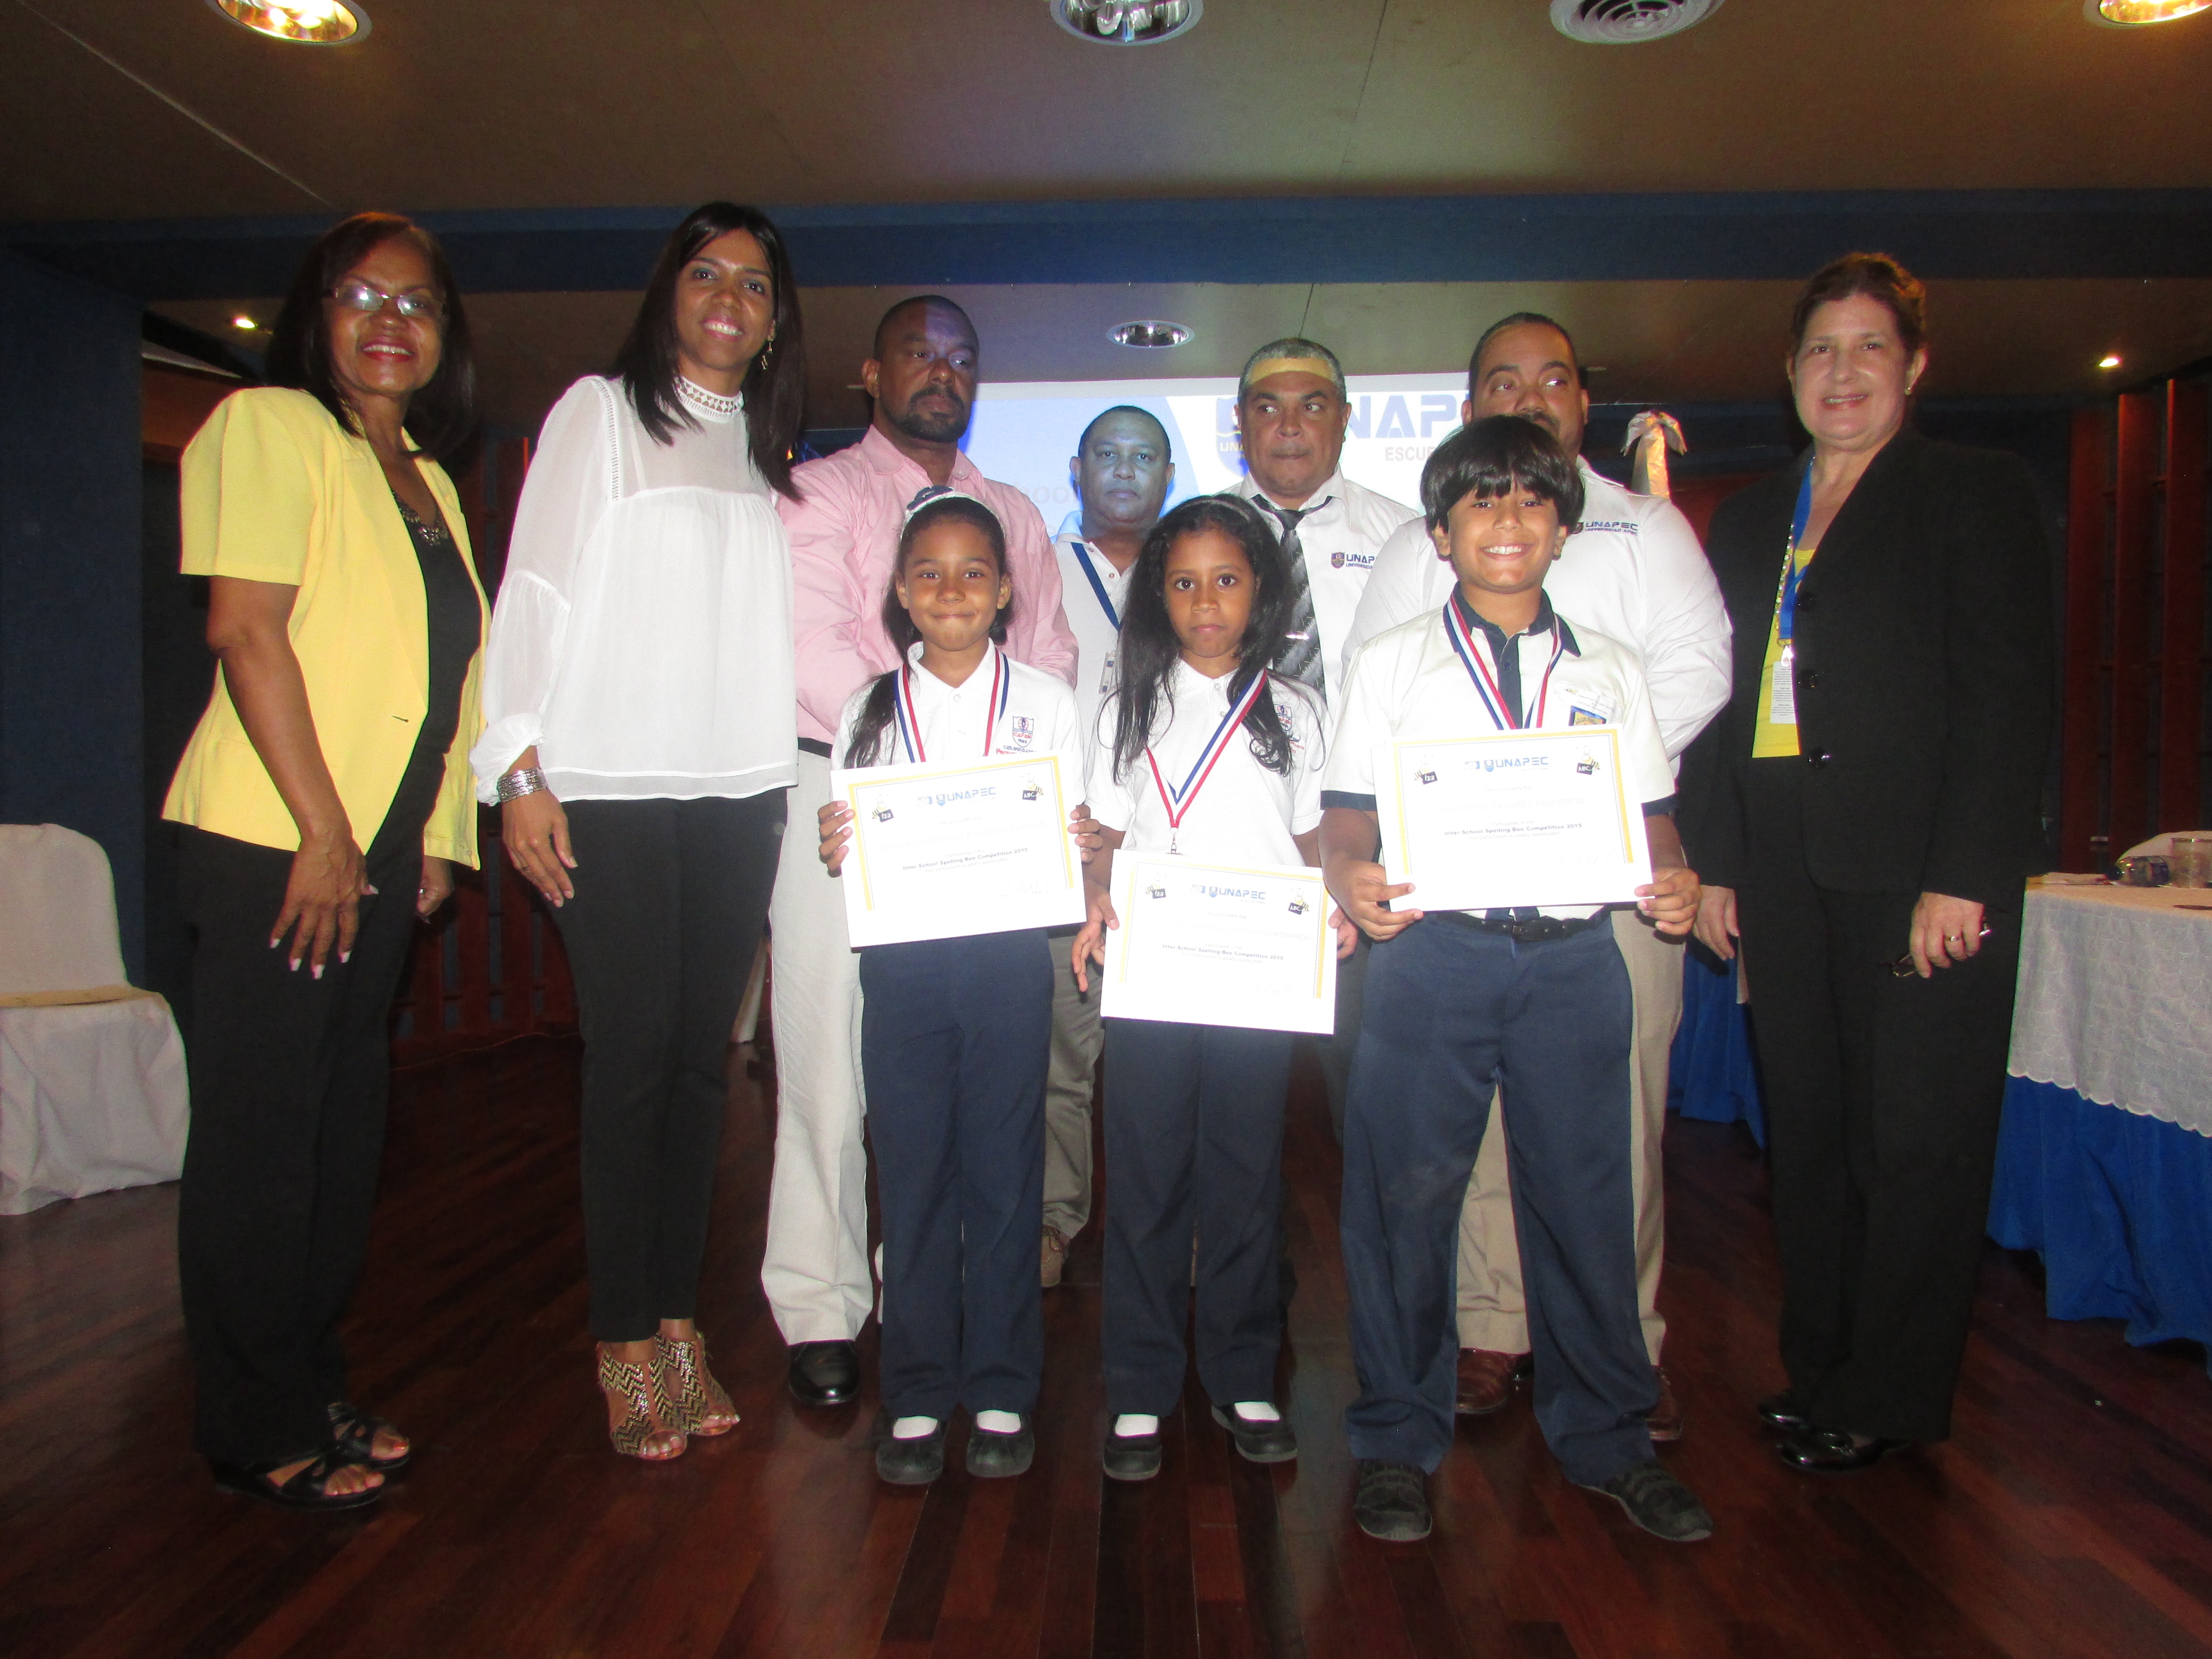 Ganadores de los tres primeros lugares de la primera categoría junto a docentes y autoridades de UNAPEC.